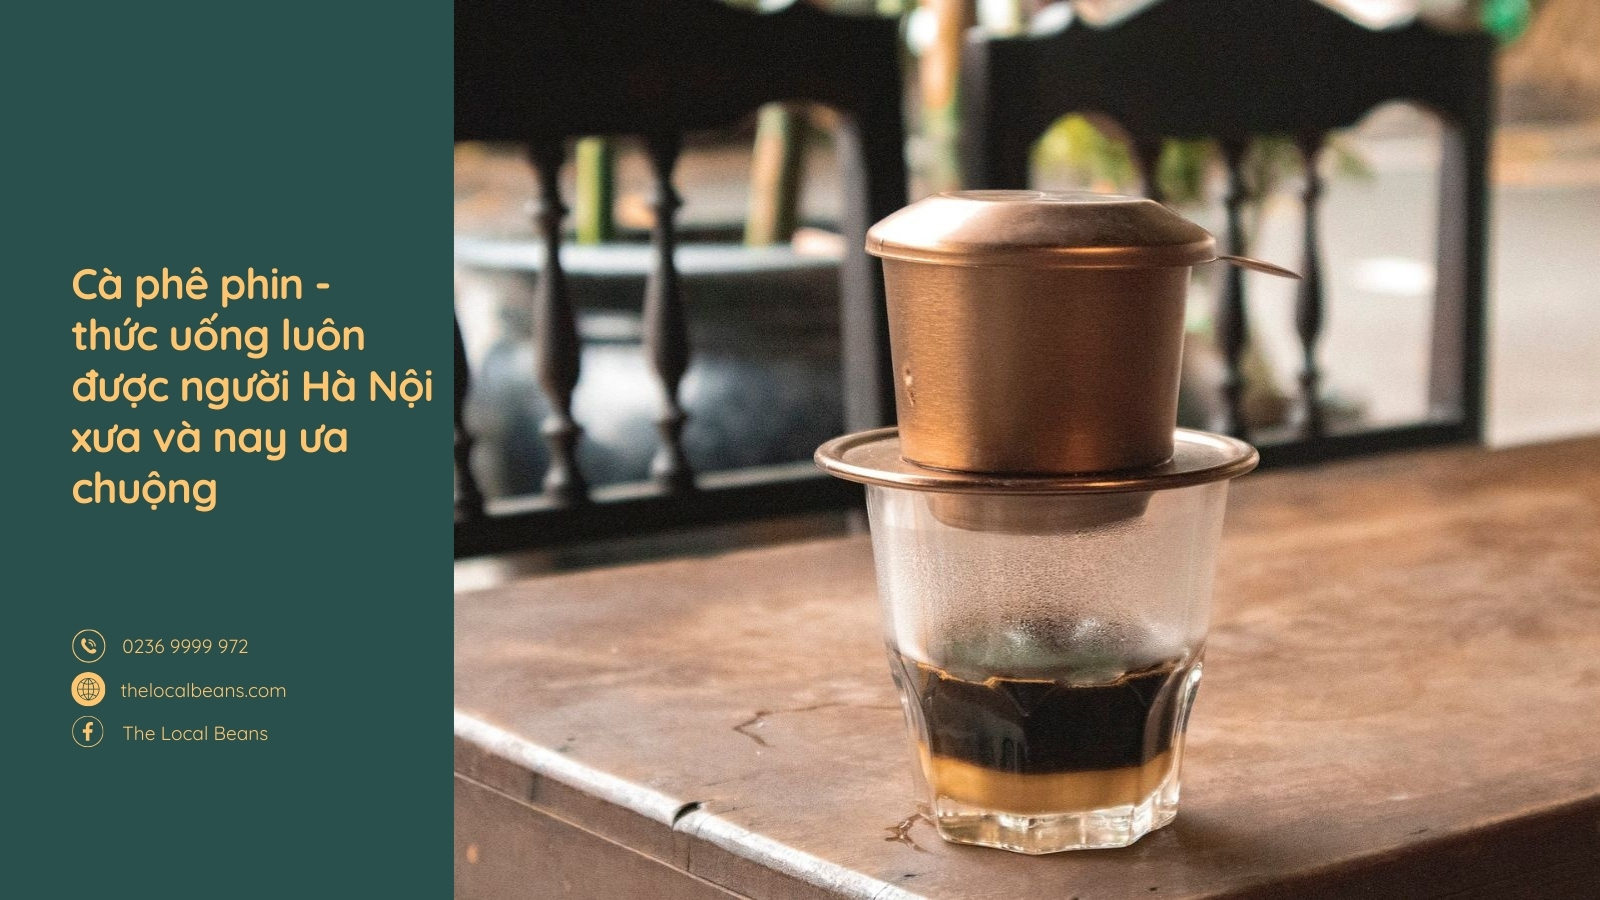 văn hoá cà phê phin Việt Nam